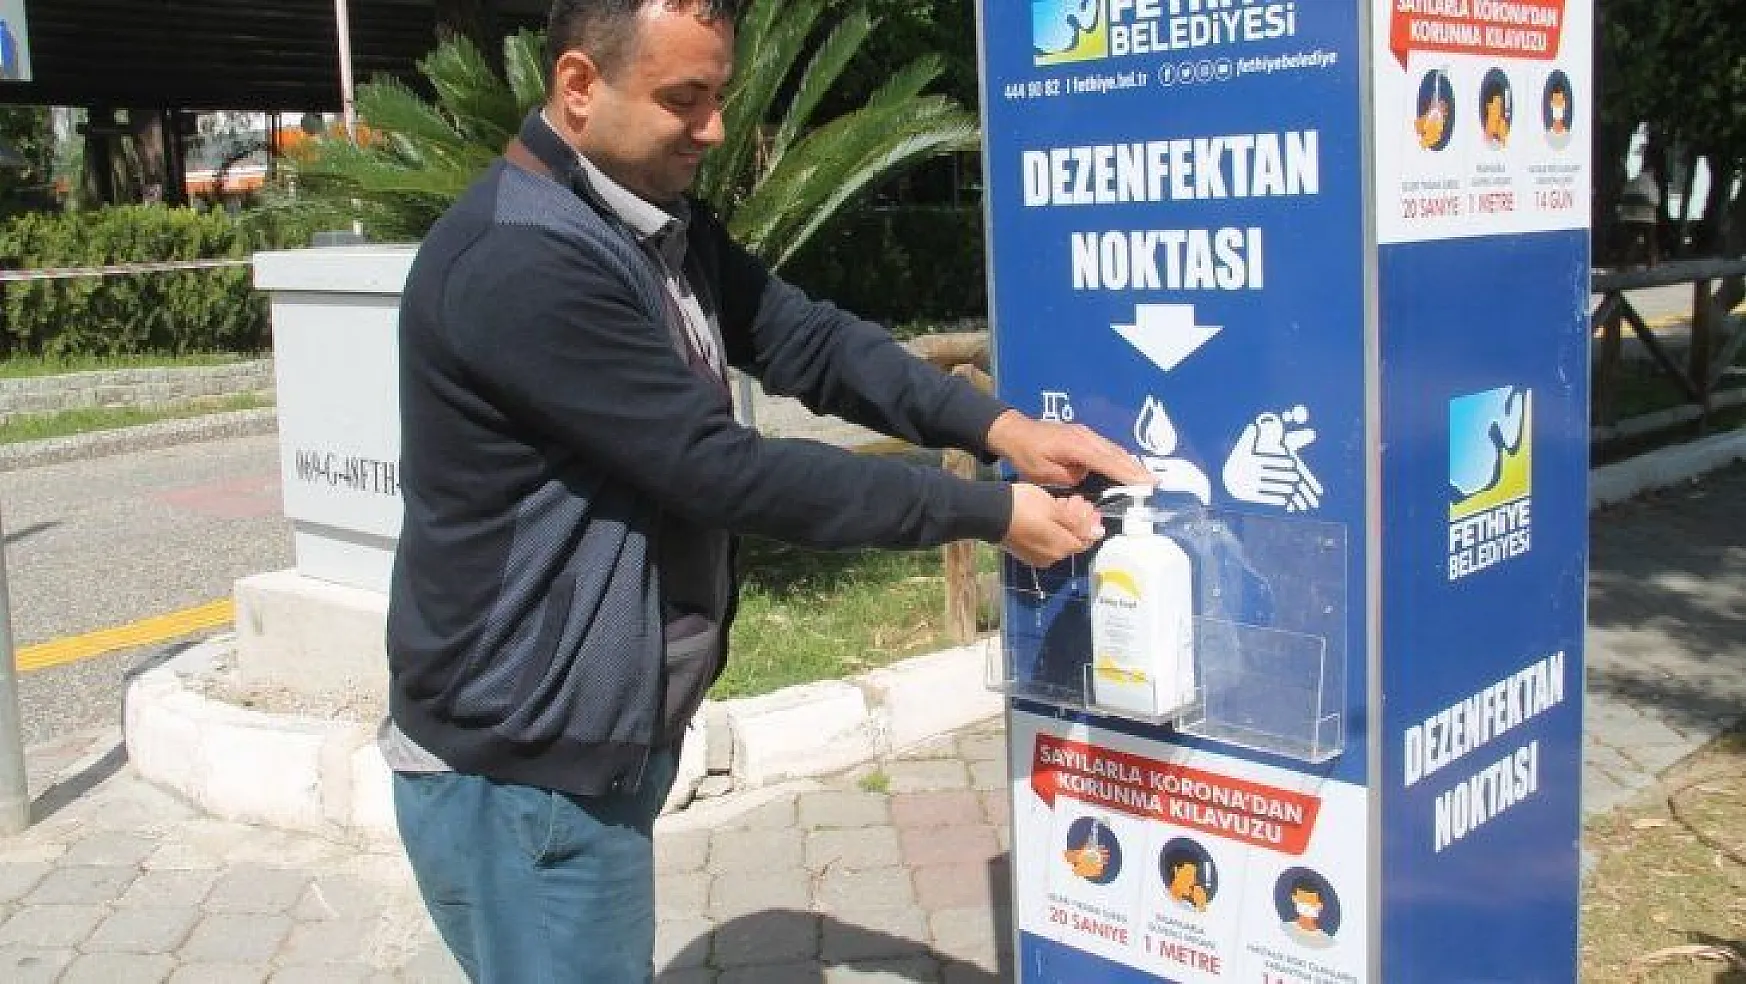 Fethiye Belediyesinden Dezenfektan Noktaları